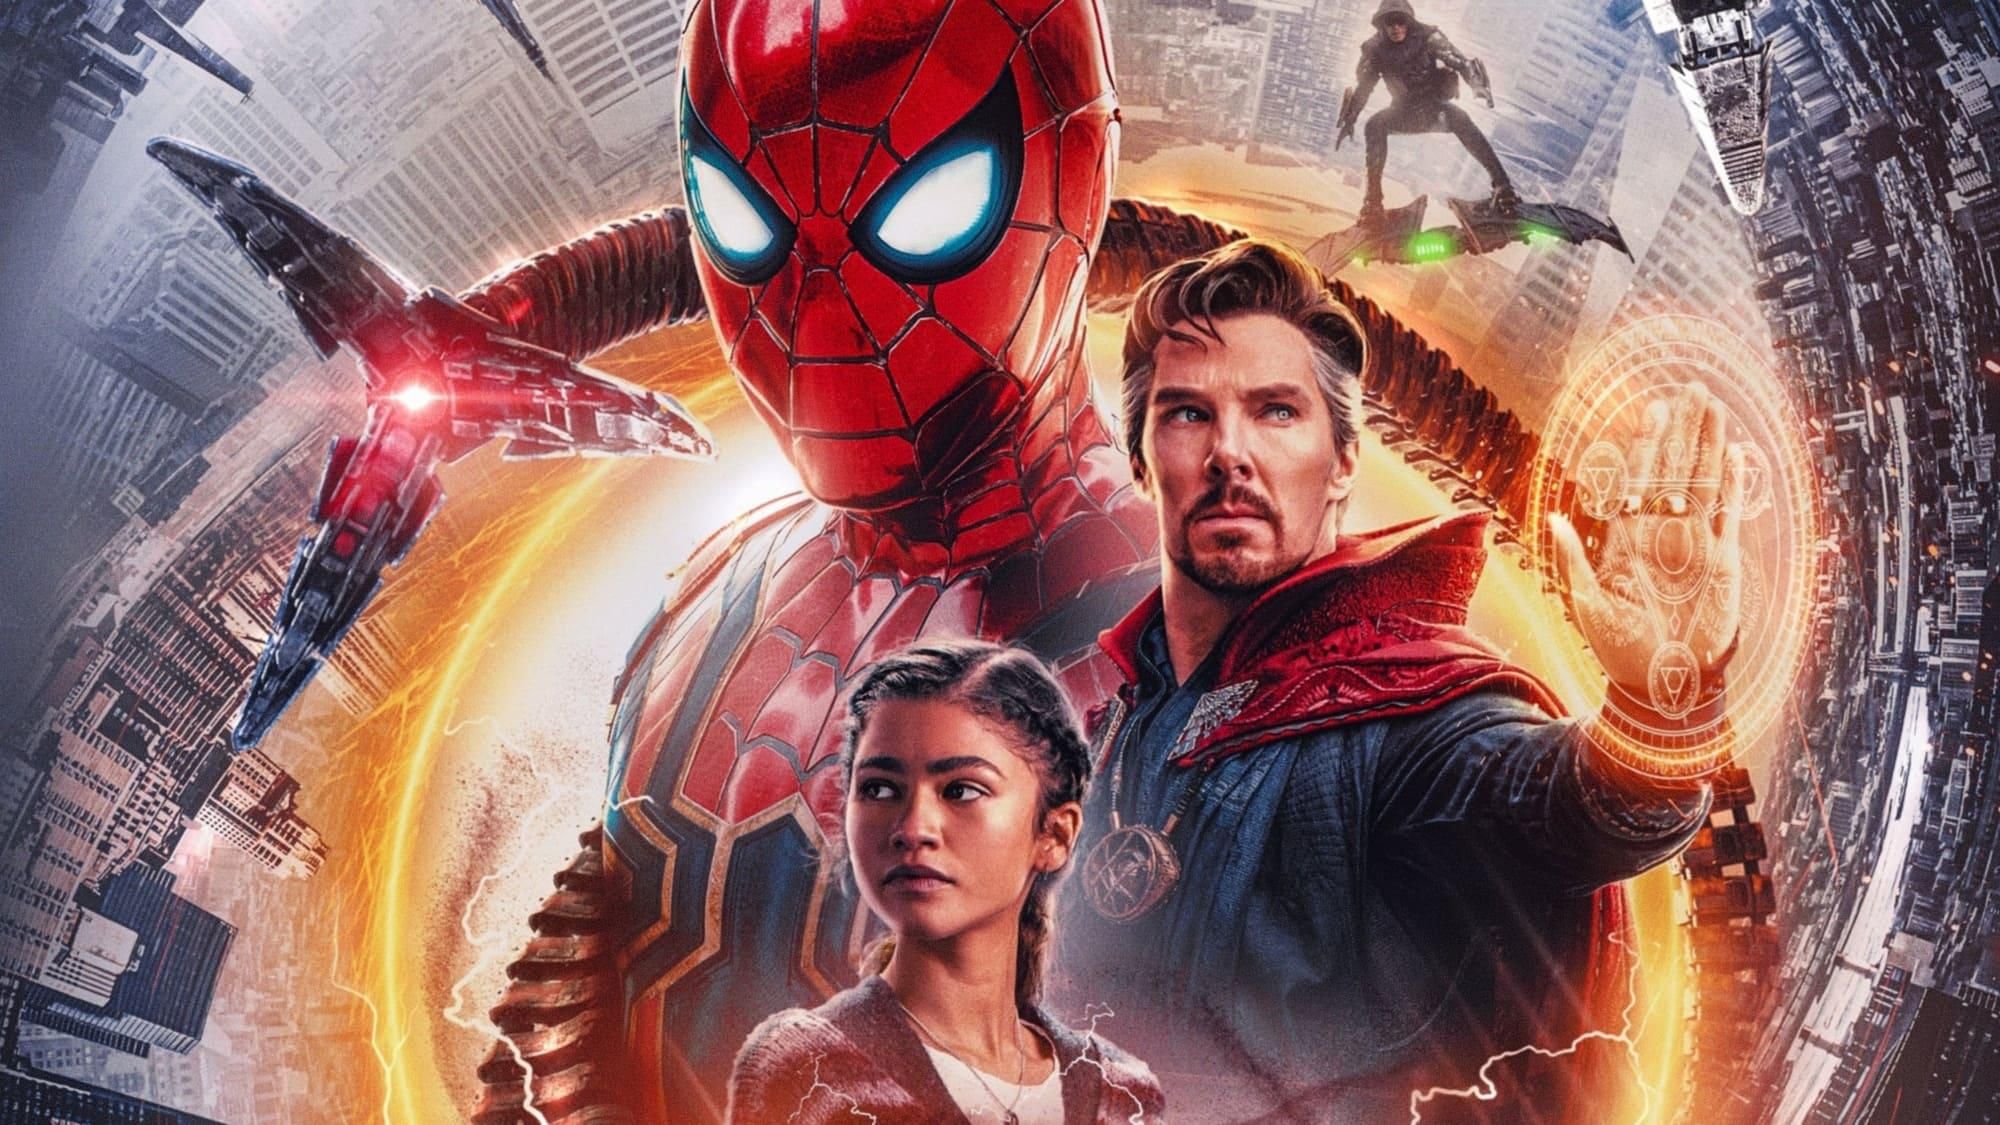 VER Spider-Man (No Way Home) estreno pelis 2021 Espanol y hd 1080p